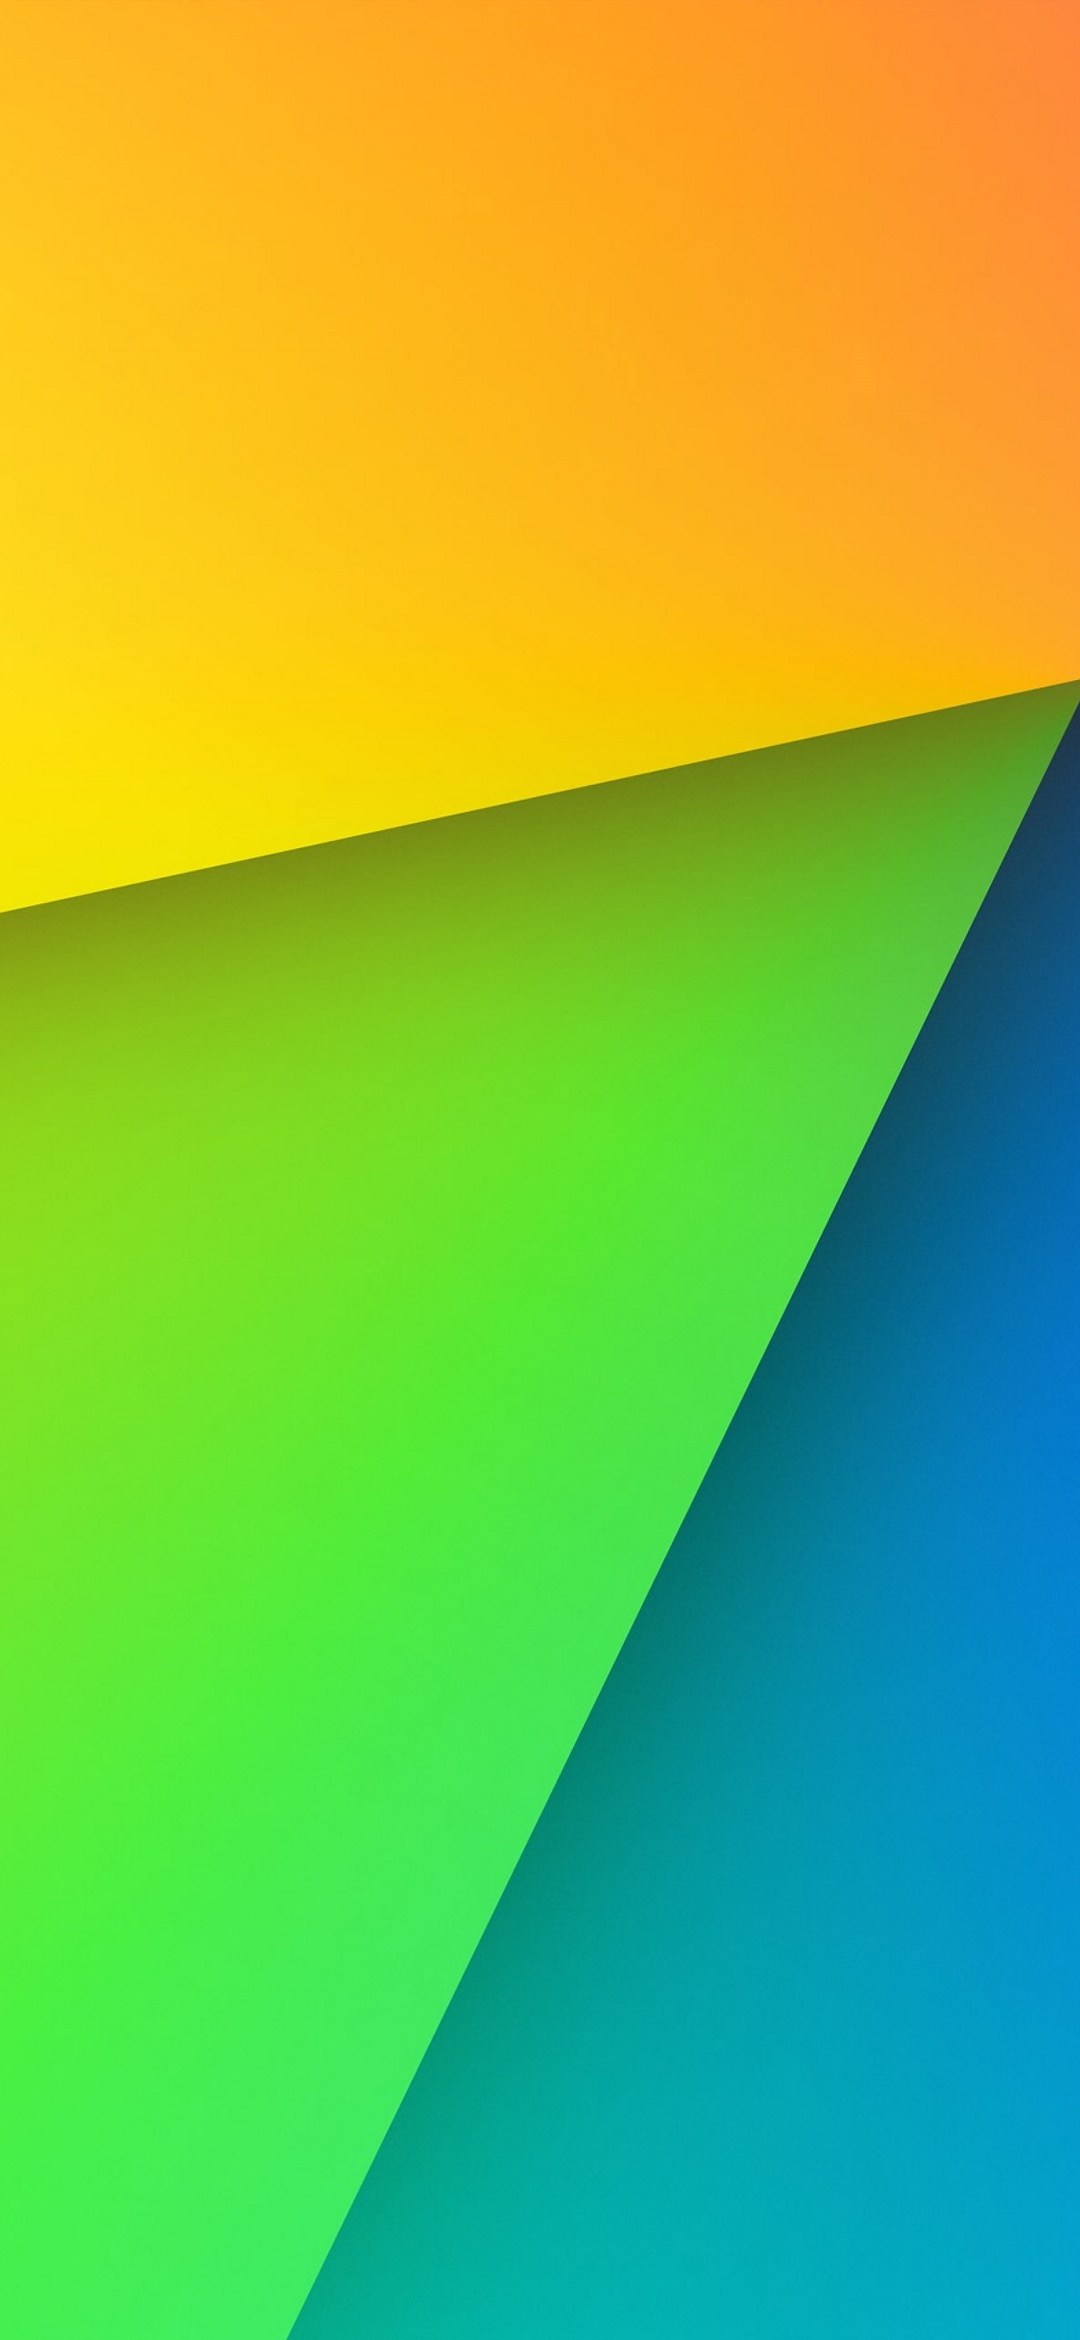 黄色 緑色 青色の3パターン Google Pixel 4a Android スマホ壁紙 待ち受け スマラン